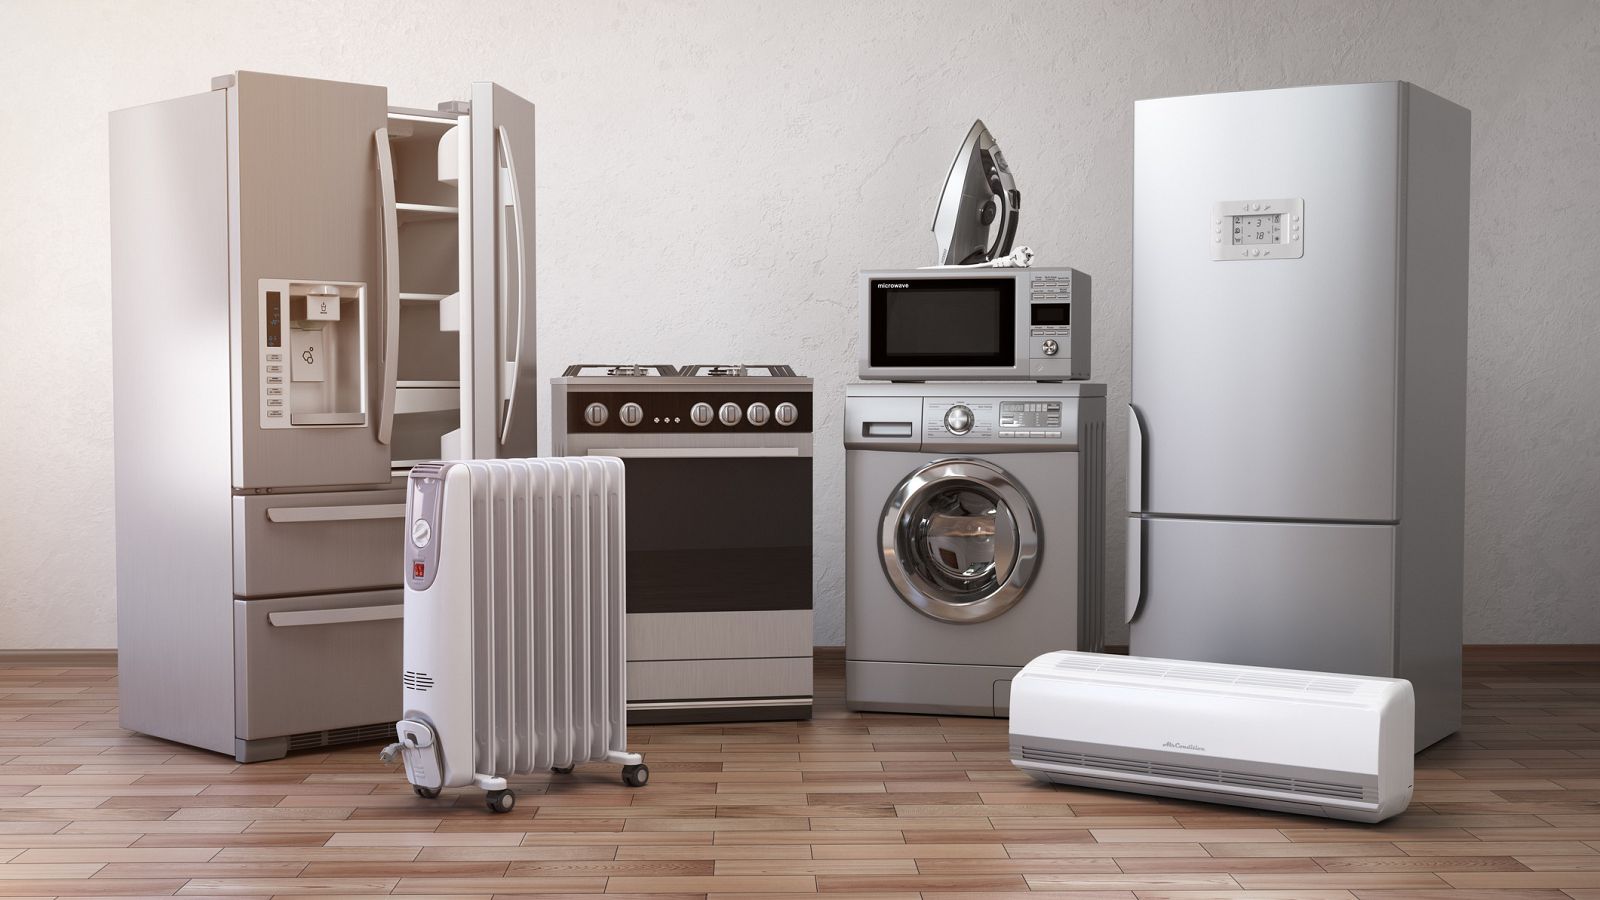 La Comisión Europea ha adoptado nuevas normas para hacer que los electrodomésticos sean más sostenibles.